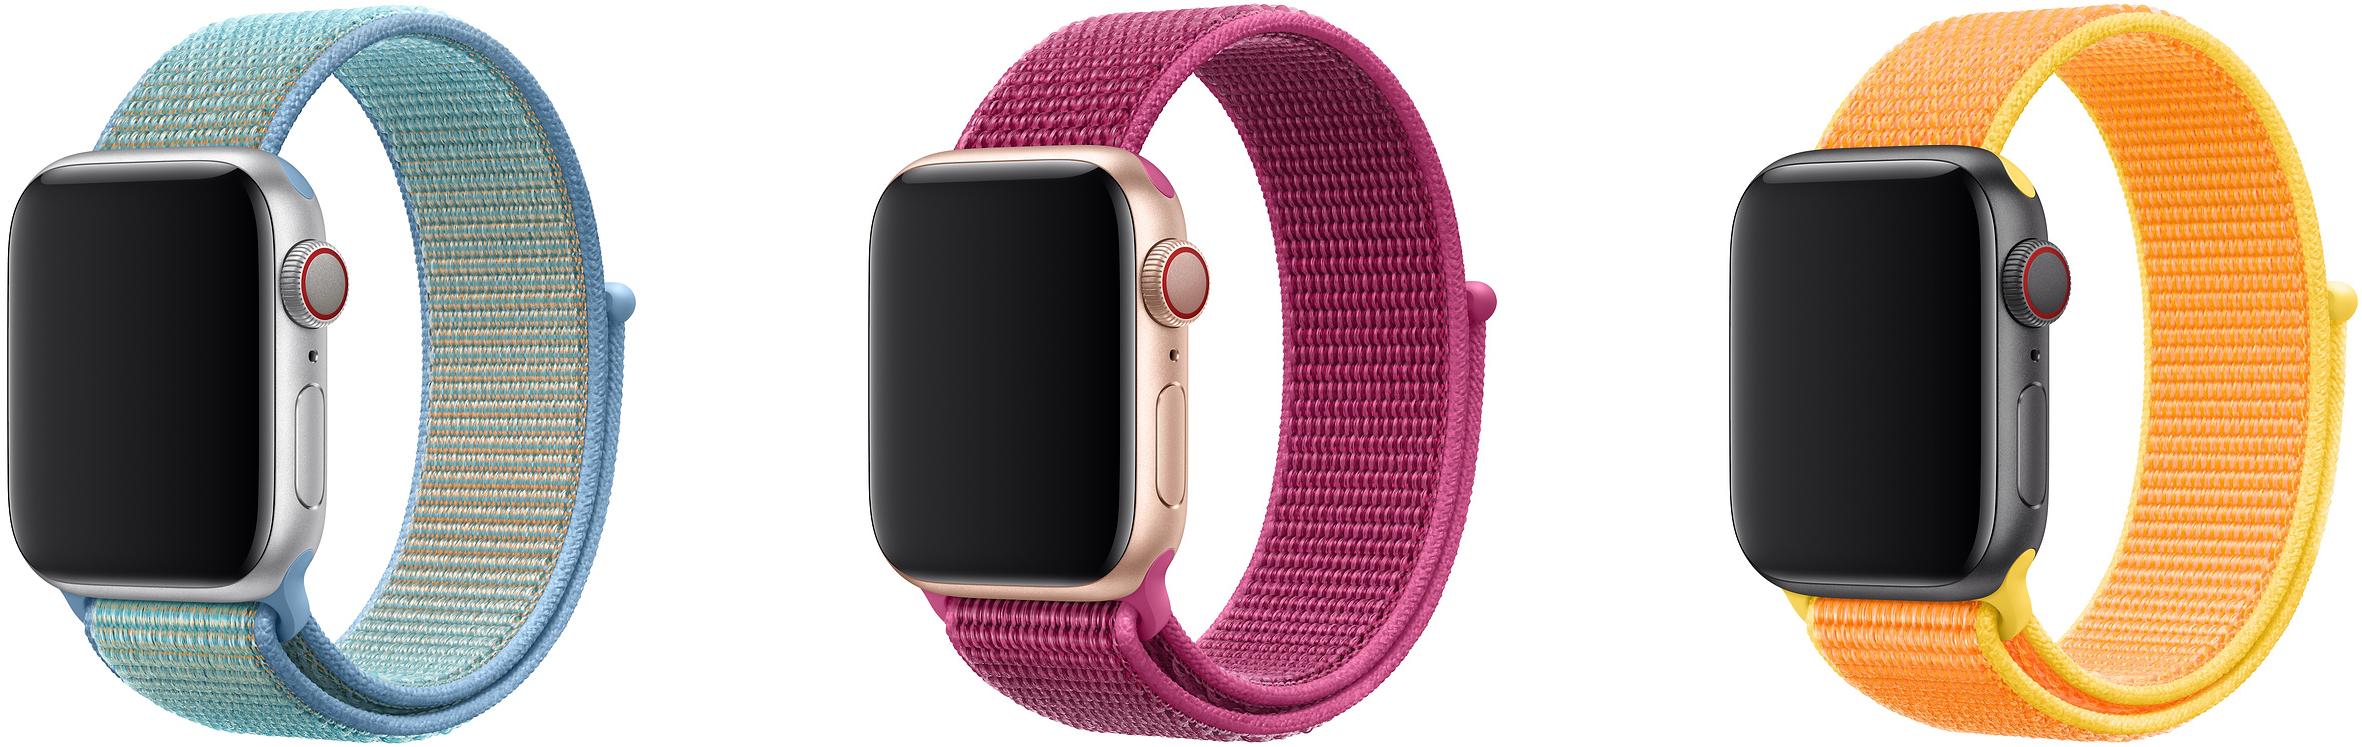 Novas cores da pulseira loop esportiva do Apple Watch